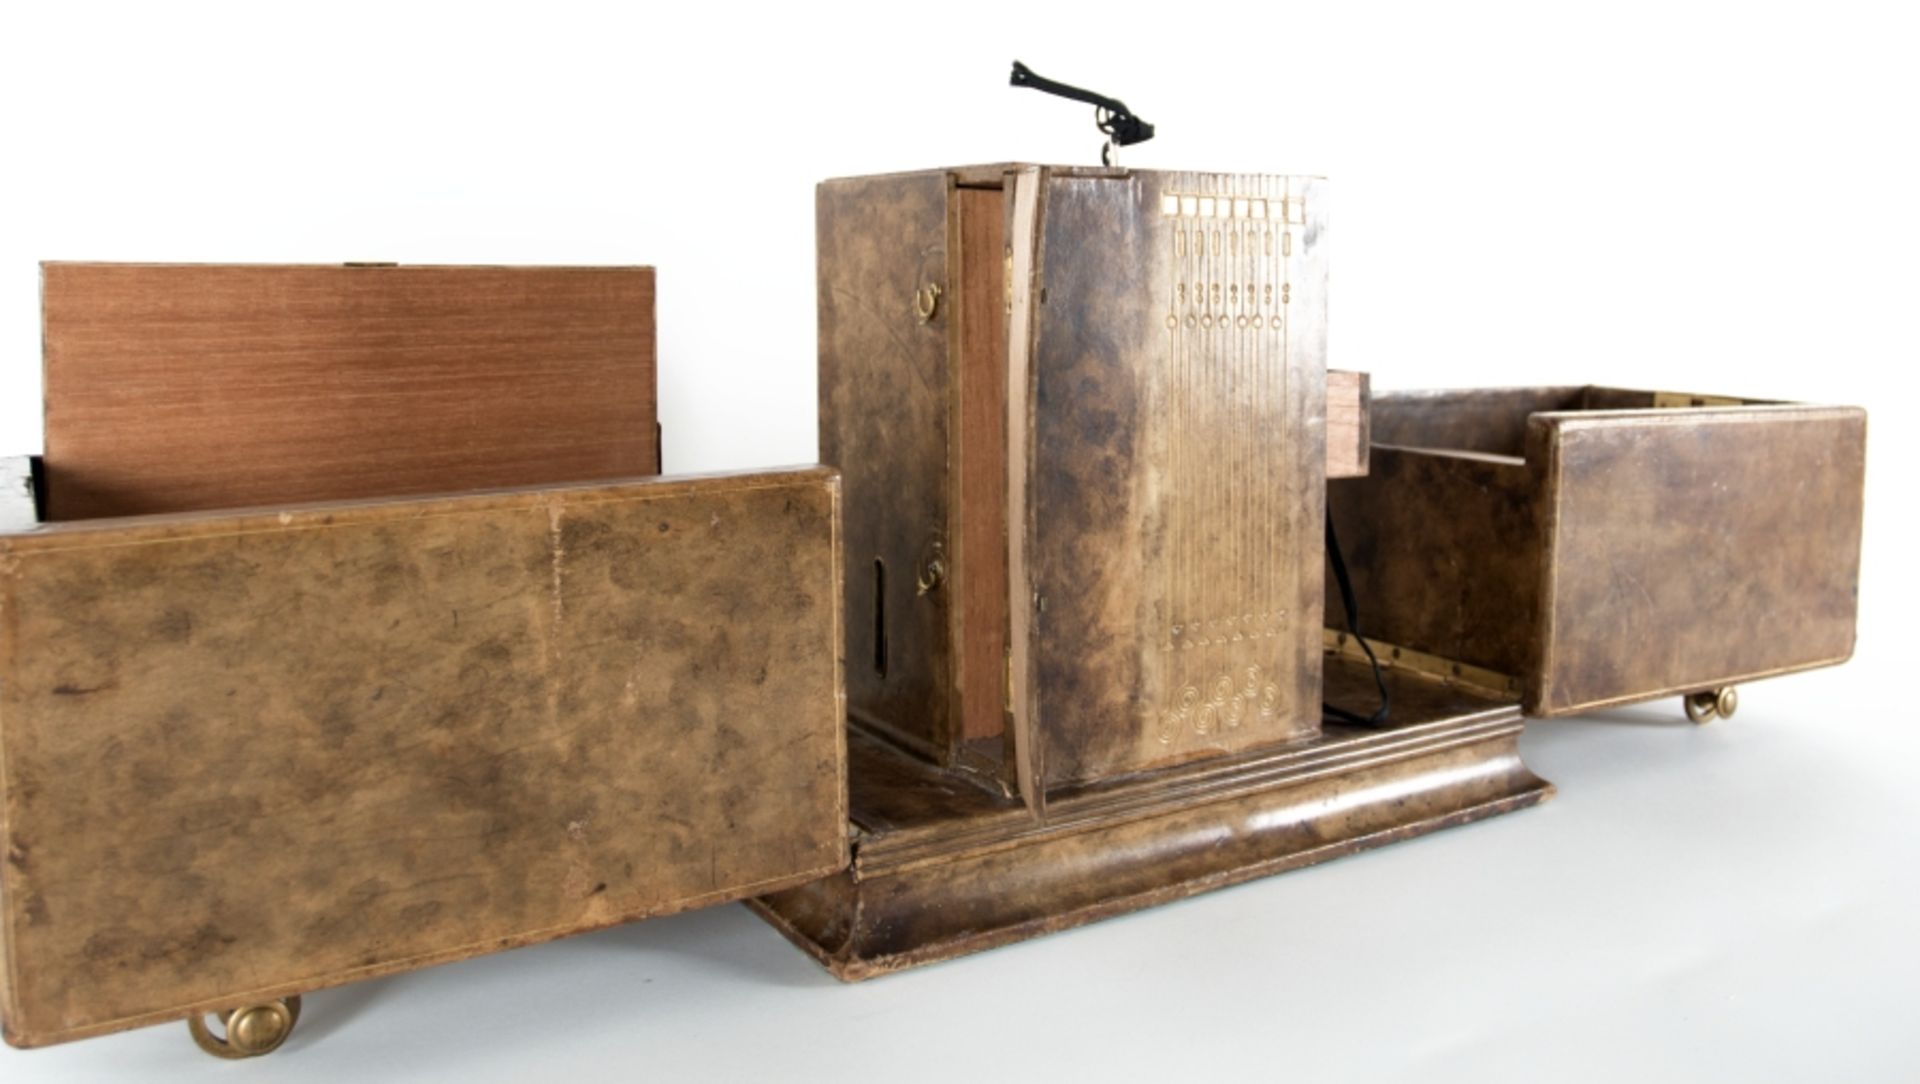 Wiener Werkstätten zugeschr.Kabinettkasten (Zigarrenkasten?)Holz, lederbezogen, mit Messing - Image 5 of 5